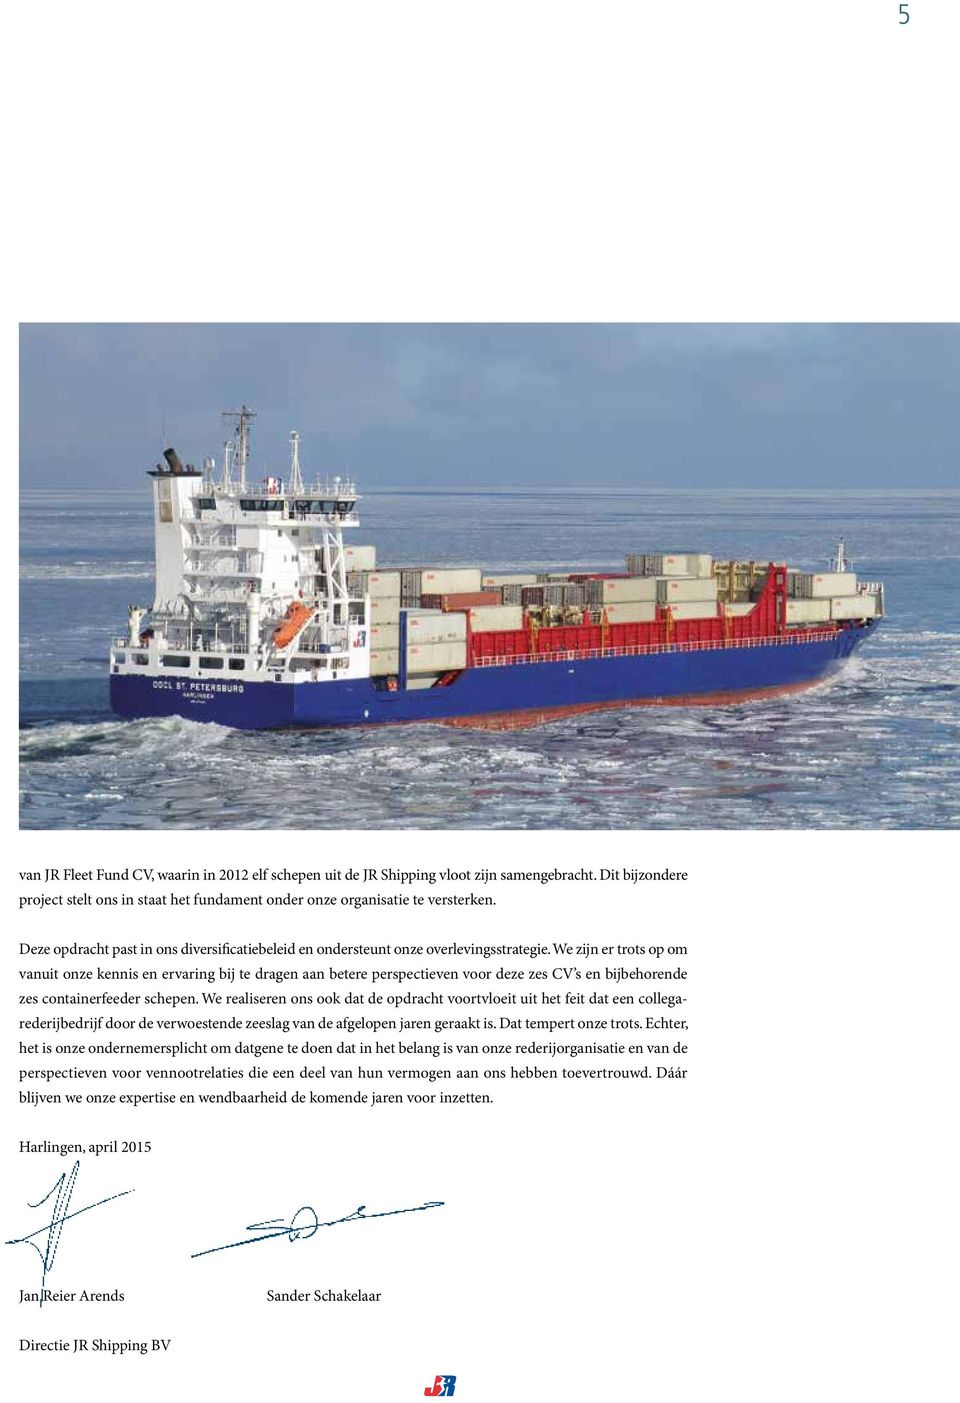 We zijn er trots op om vanuit onze kennis en ervaring bij te dragen aan betere perspectieven voor deze zes CV s en bijbehorende zes containerfeeder schepen.